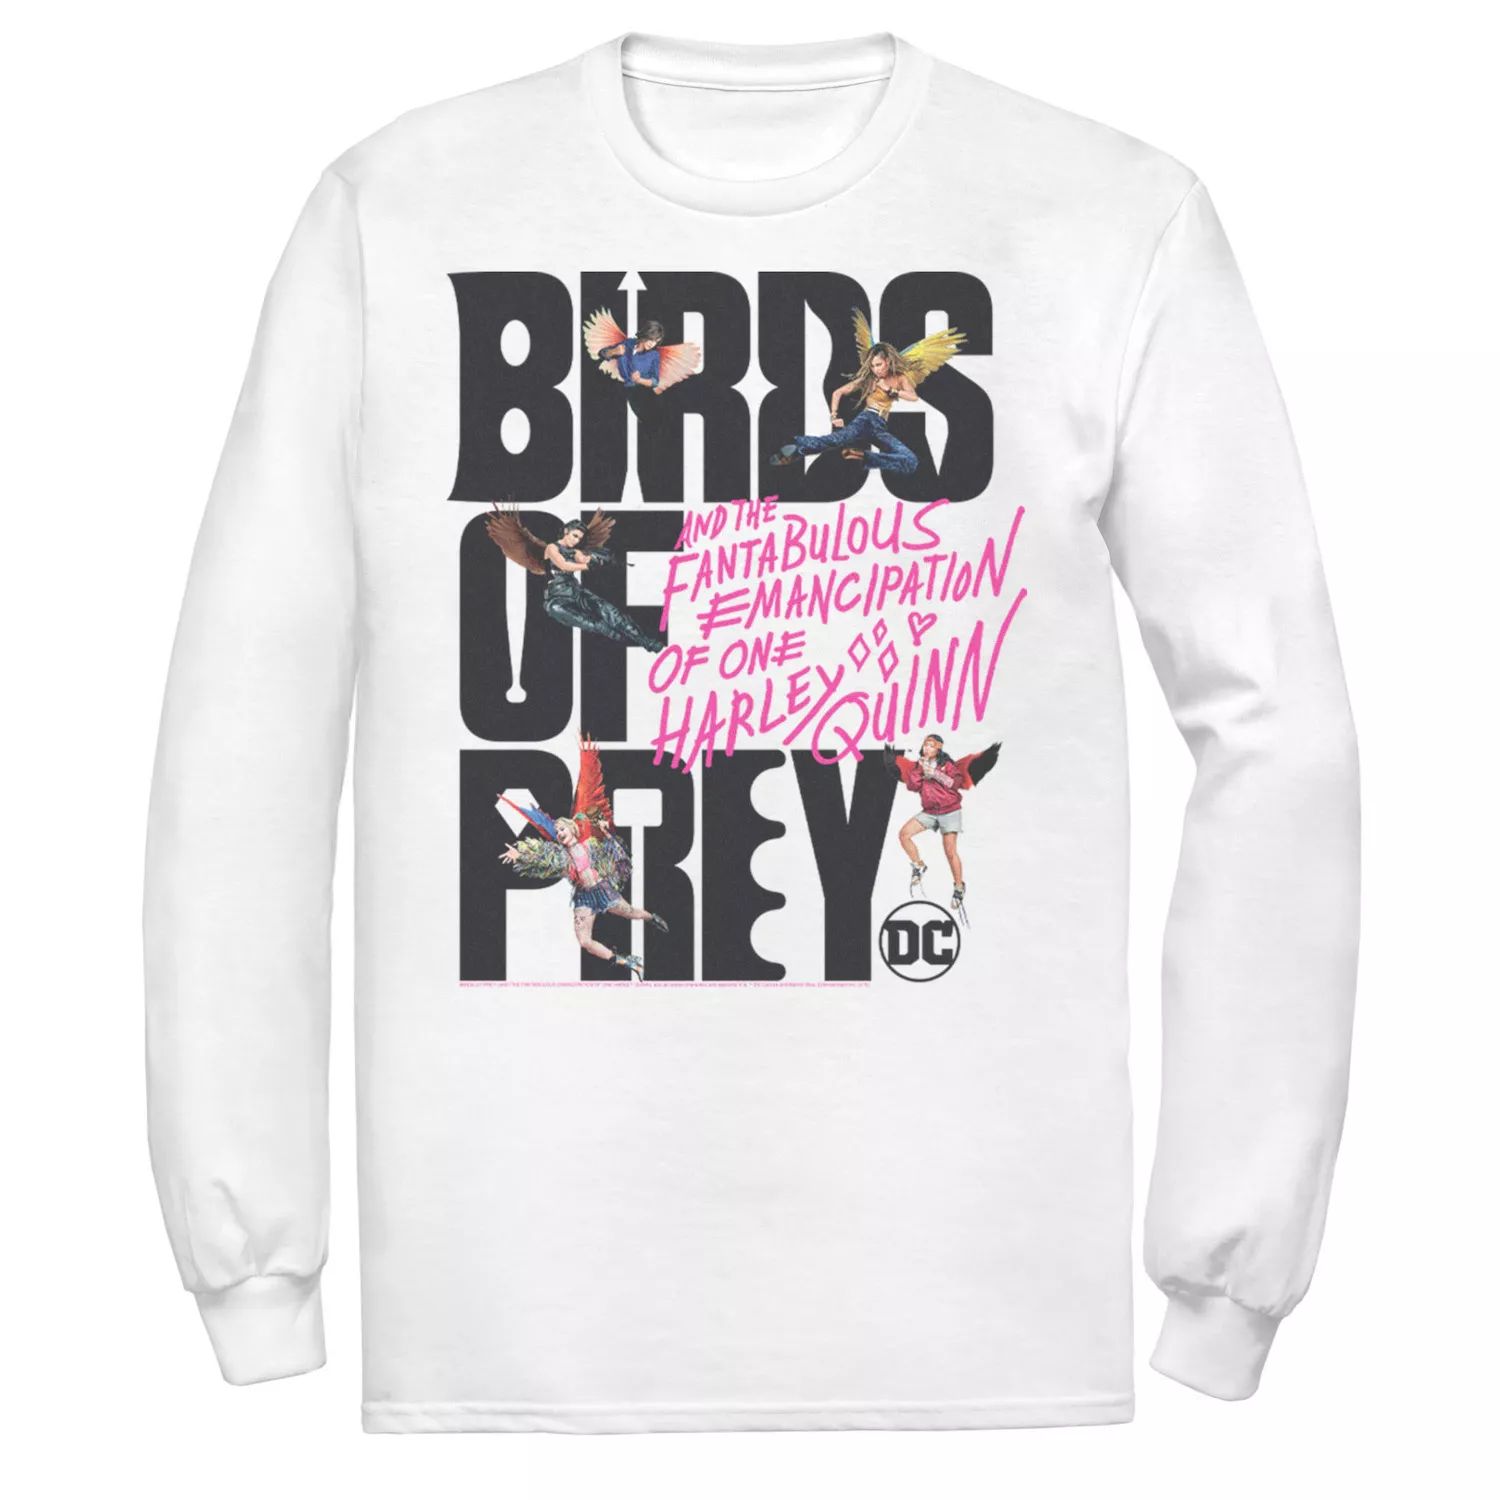 Мужская футболка с надписью «Хищные птицы» и коллажем DC Comics наклейка патч для одежды priority dc хищные птицы